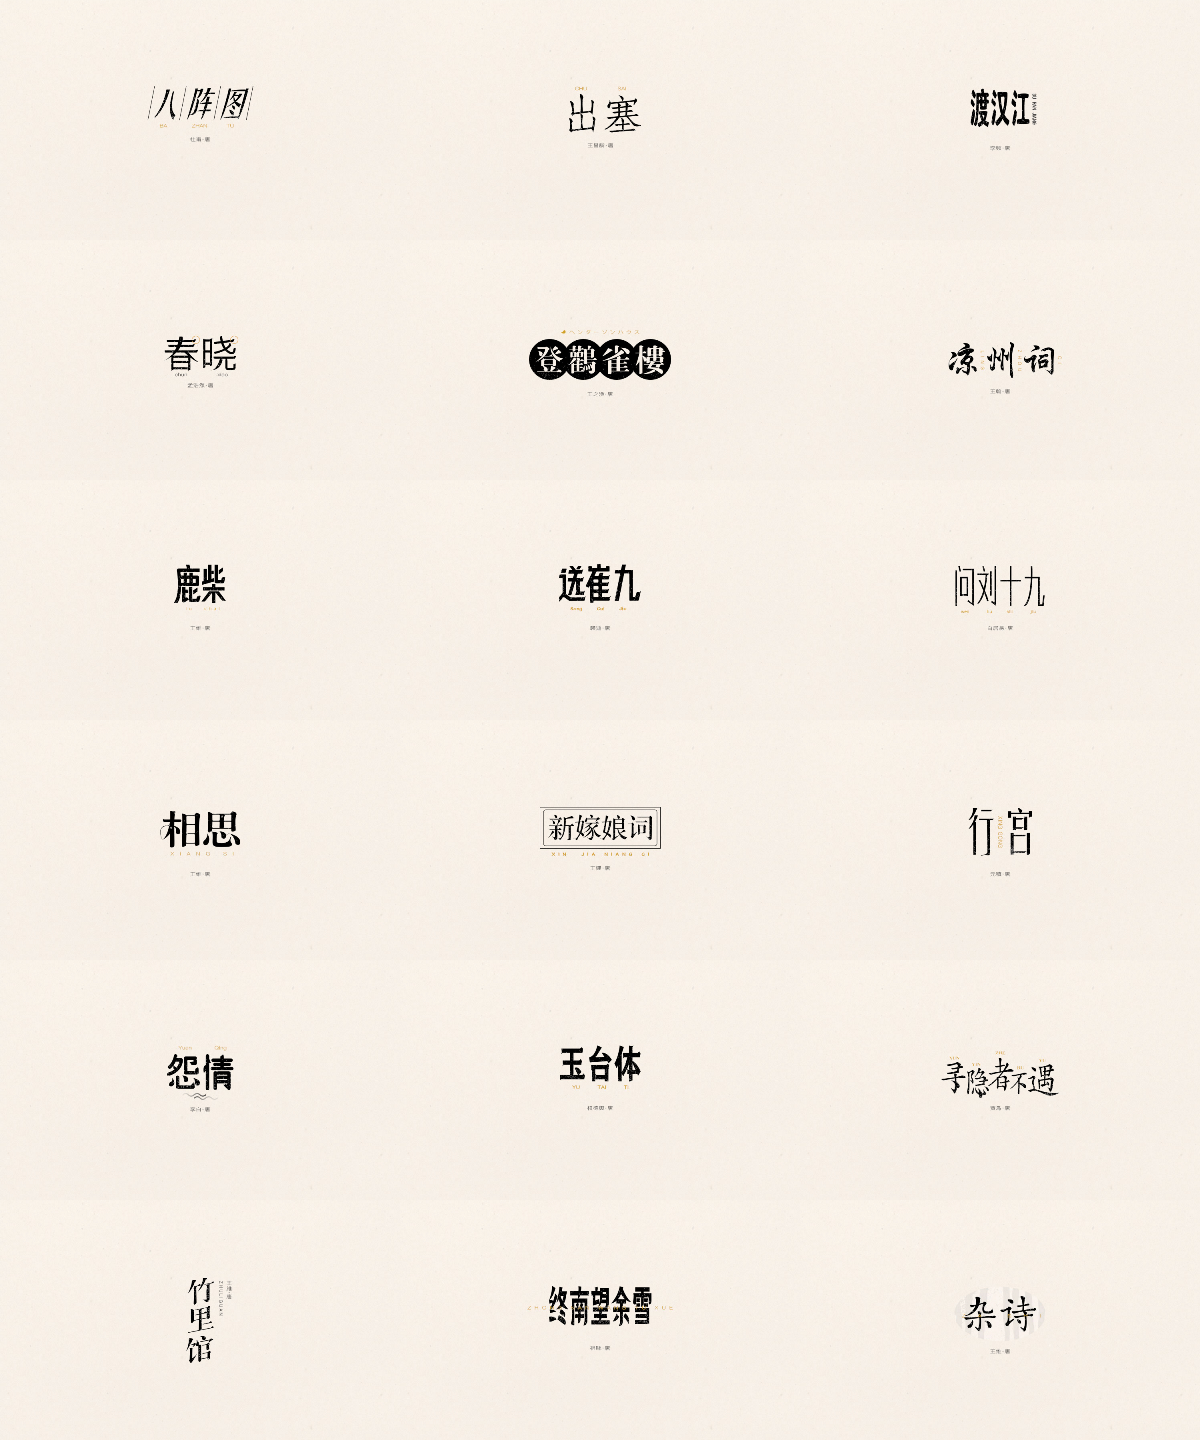 唐诗三百首|五言绝句 - 弘后造字-中国设计网